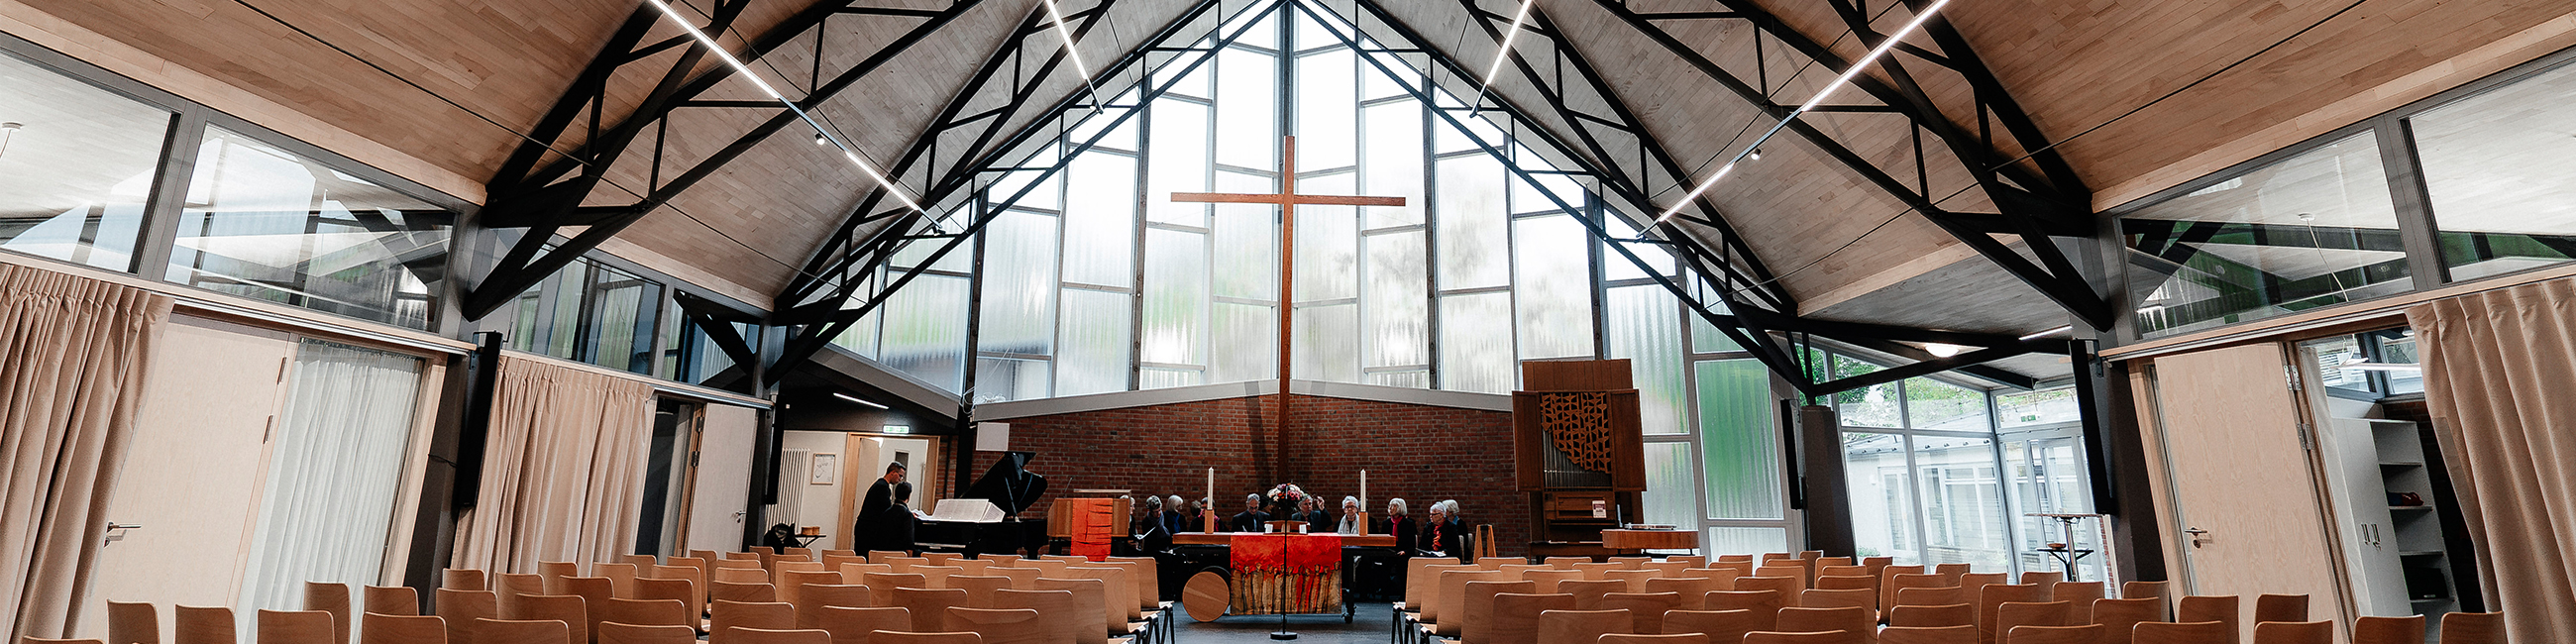 Der Gottesdienstraum der Jeremiakirche mit großer dreieckiger Glasfront. Im Altarraum schwebt ein großes Kreuz.